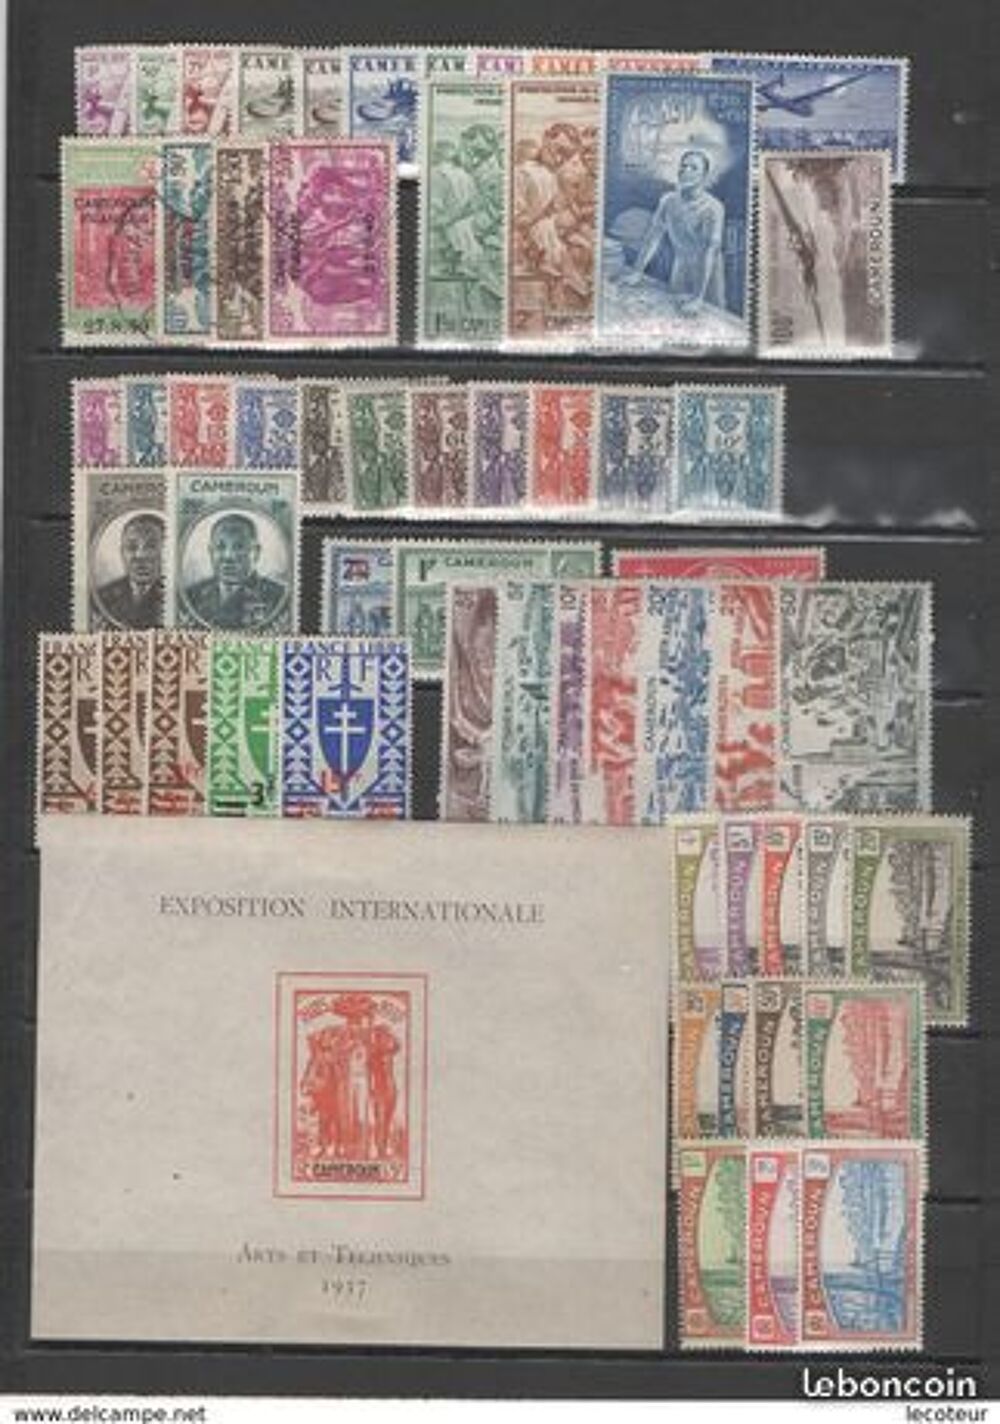 Collection de timbres du CAMEROUN 